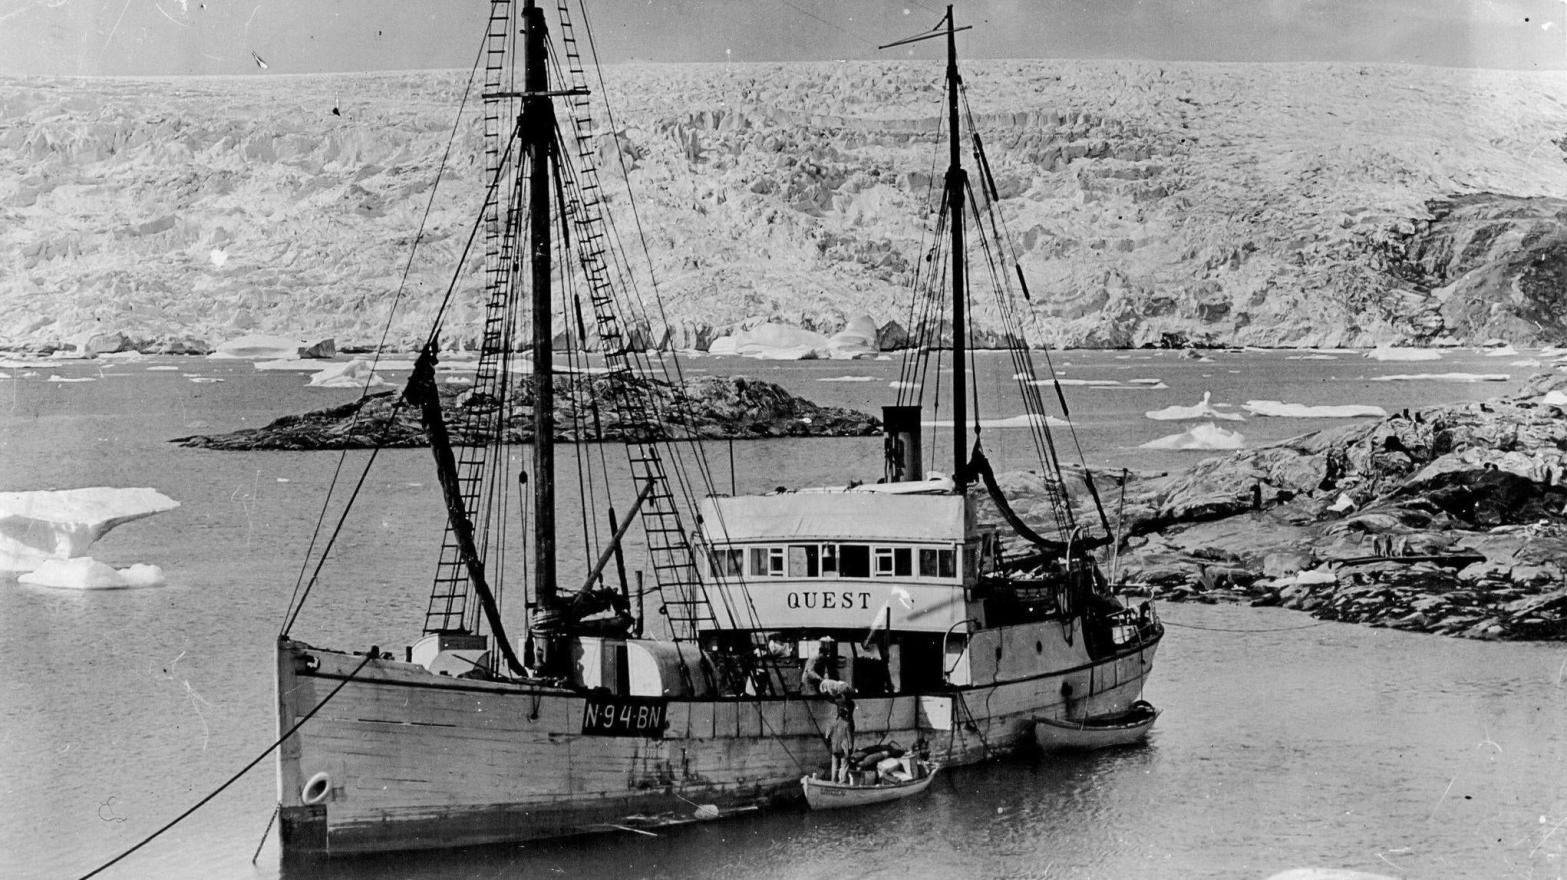 Ernest Shackleton’s Last Ship Found on the Ocean Floor Near Canada’s East Coast